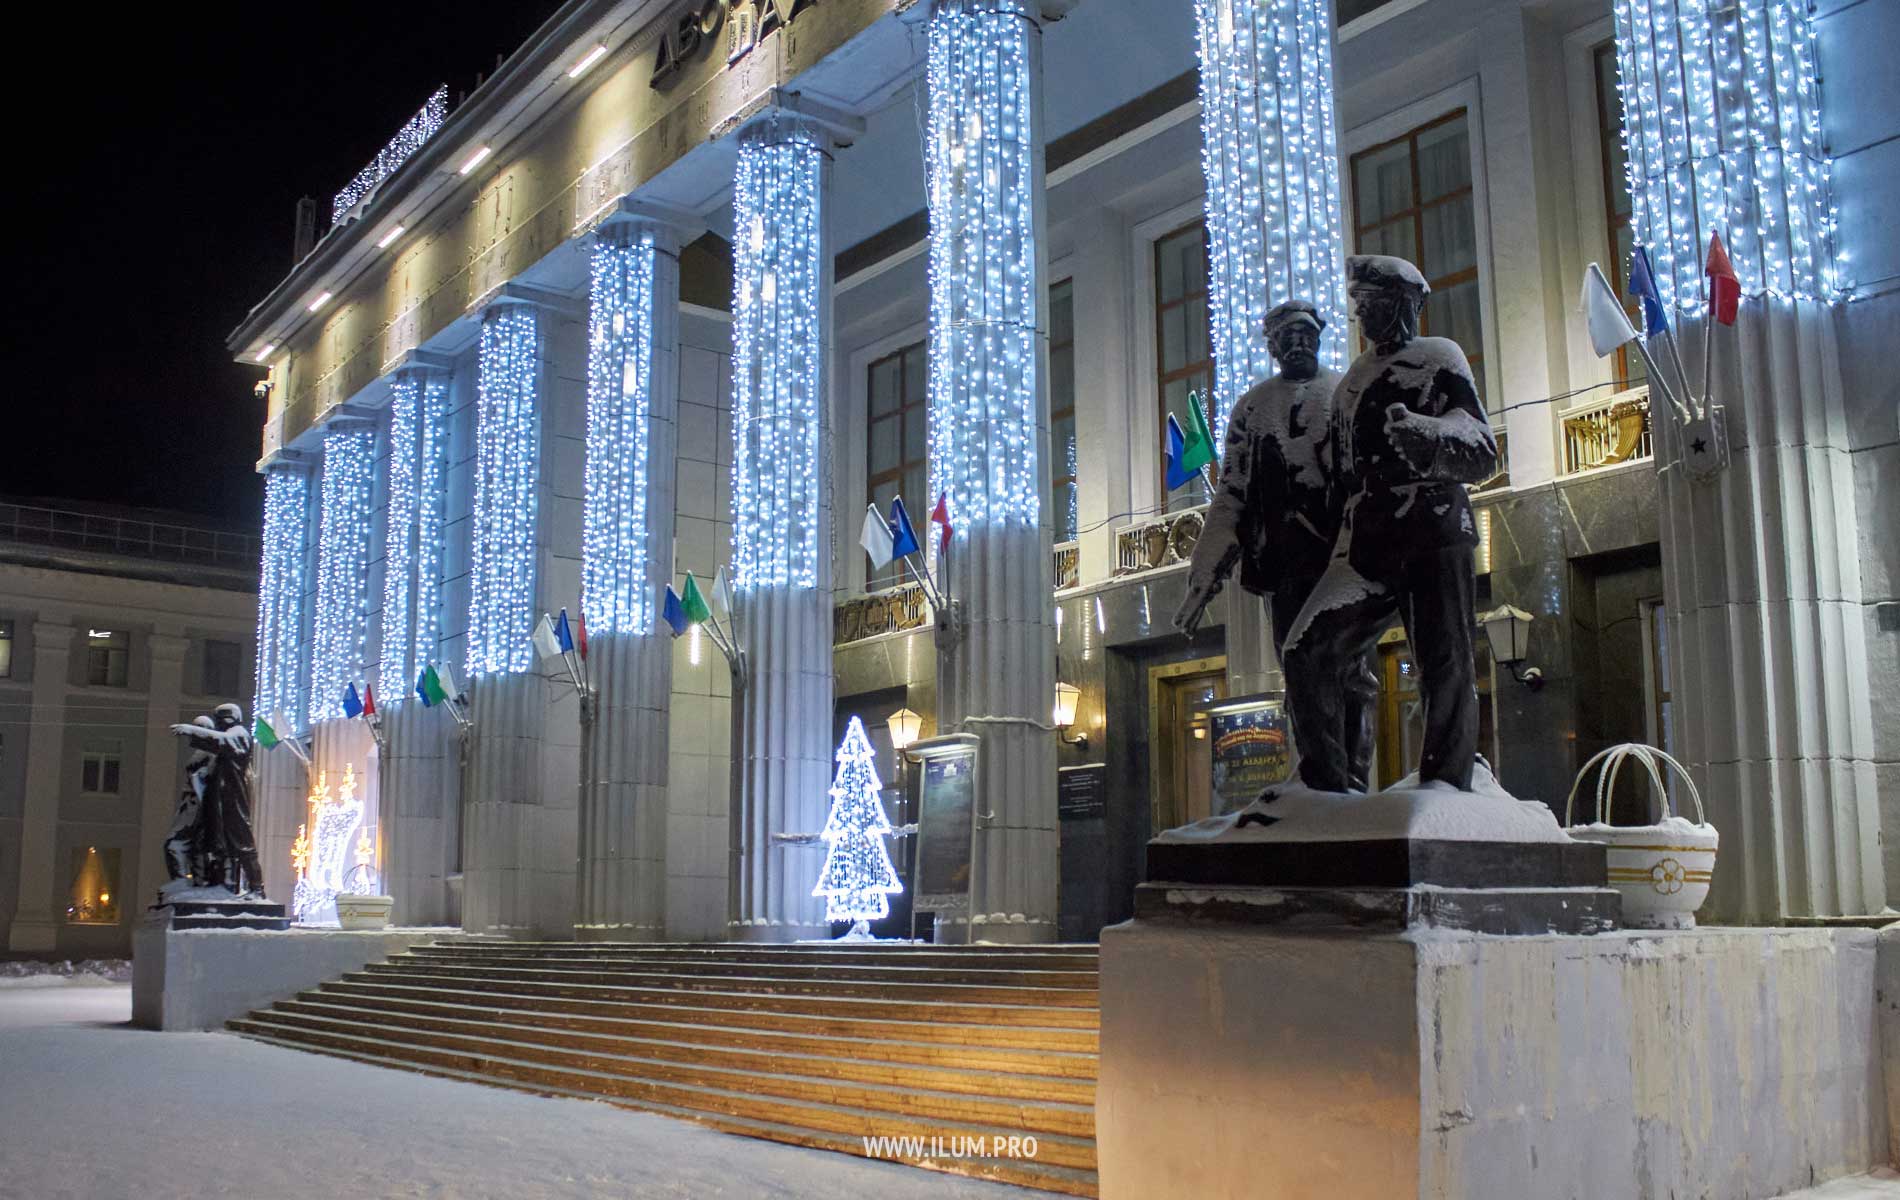 Новогодняя подсветка фасада здания дождями белого цвета и световыми фигурами